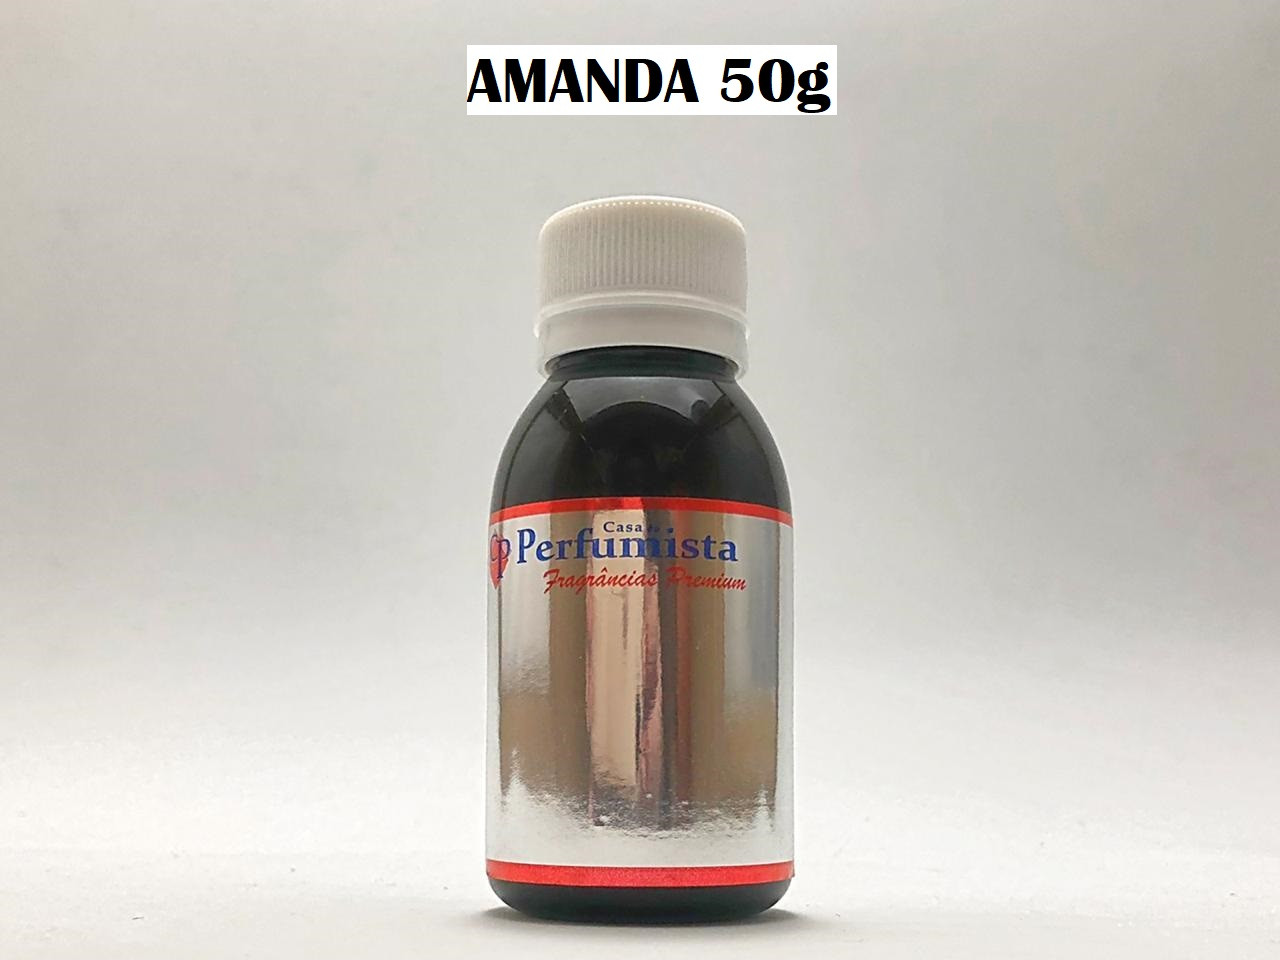 AMANDA 50g - Inspiração: Amarige Feminino 